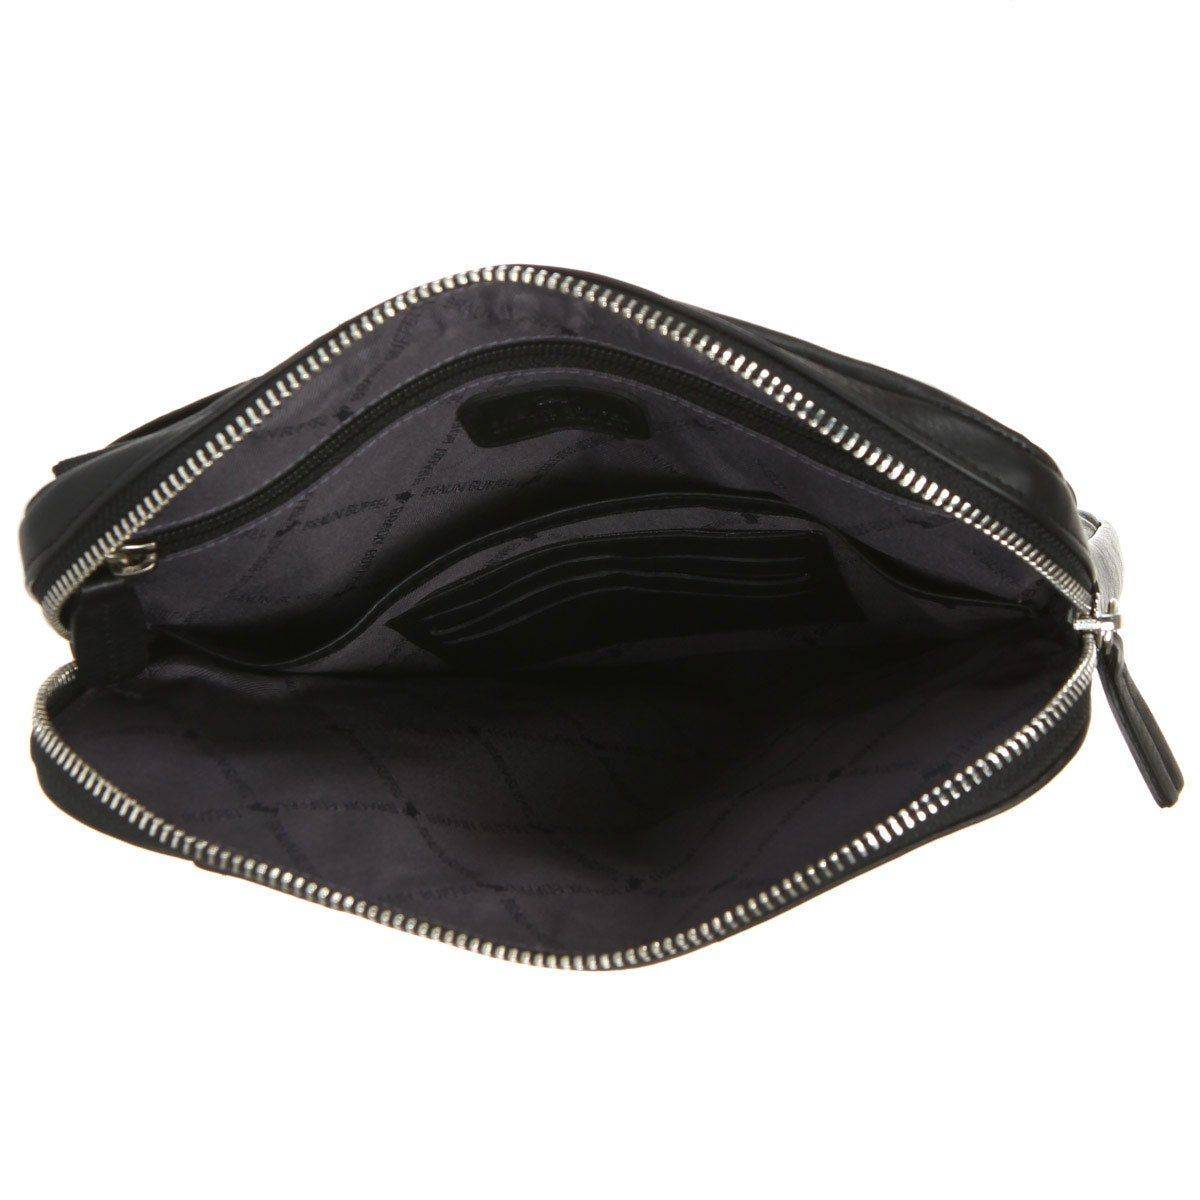 Сумка репортер Braun Buffel GOLF Shoulder Bag M 92562, цвет черный, размер ONE SIZE - фото 5